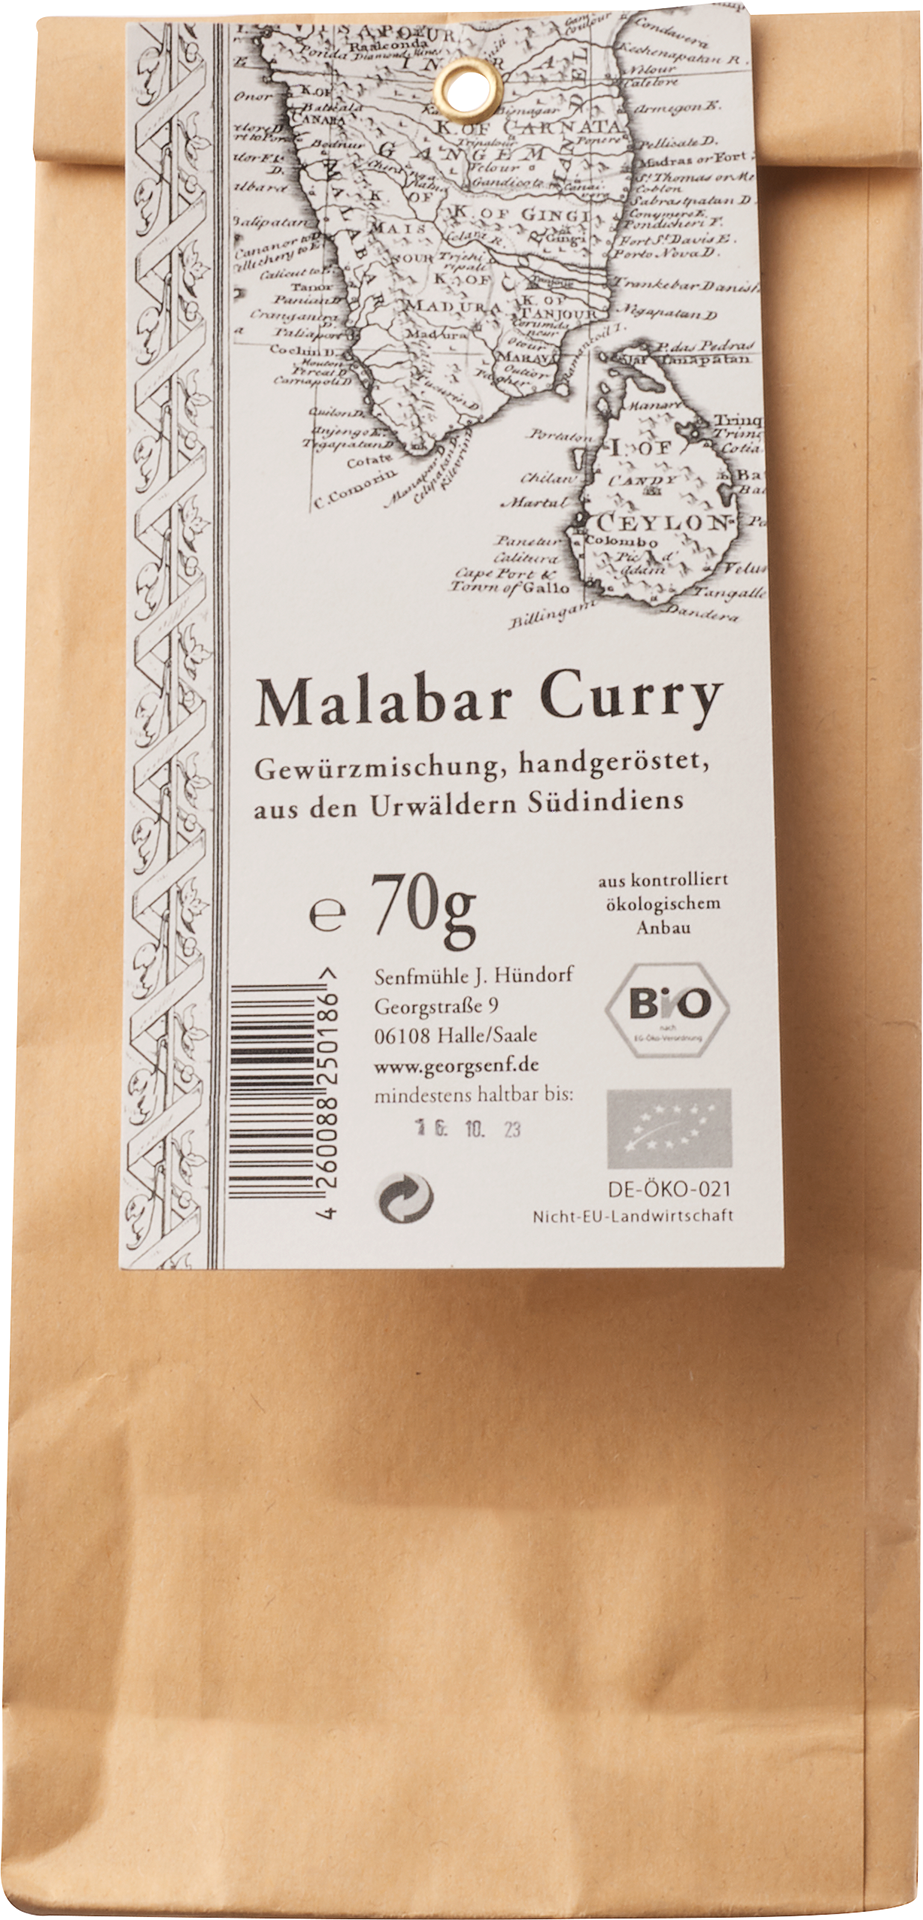 Malabar Curry (handgeröstet)